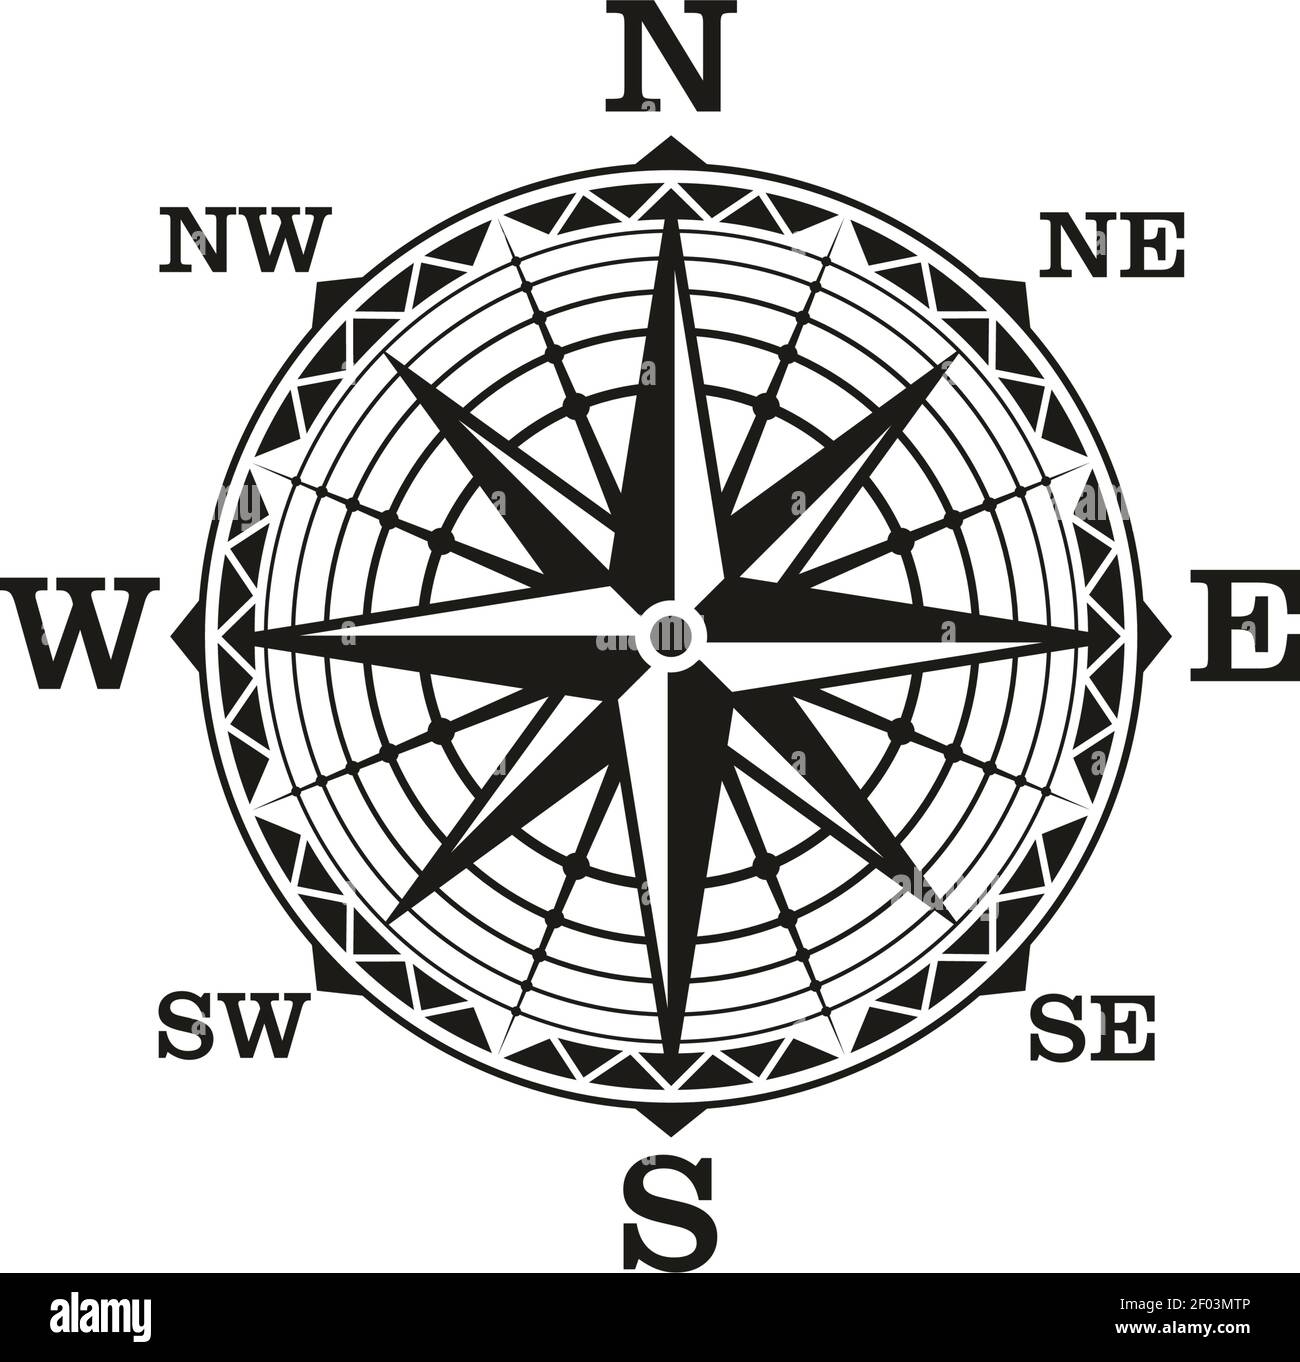 Icona araldica della bussola di navigazione nautica. Vector Winds Rose  direction, bussola a vela marina Immagine e Vettoriale - Alamy